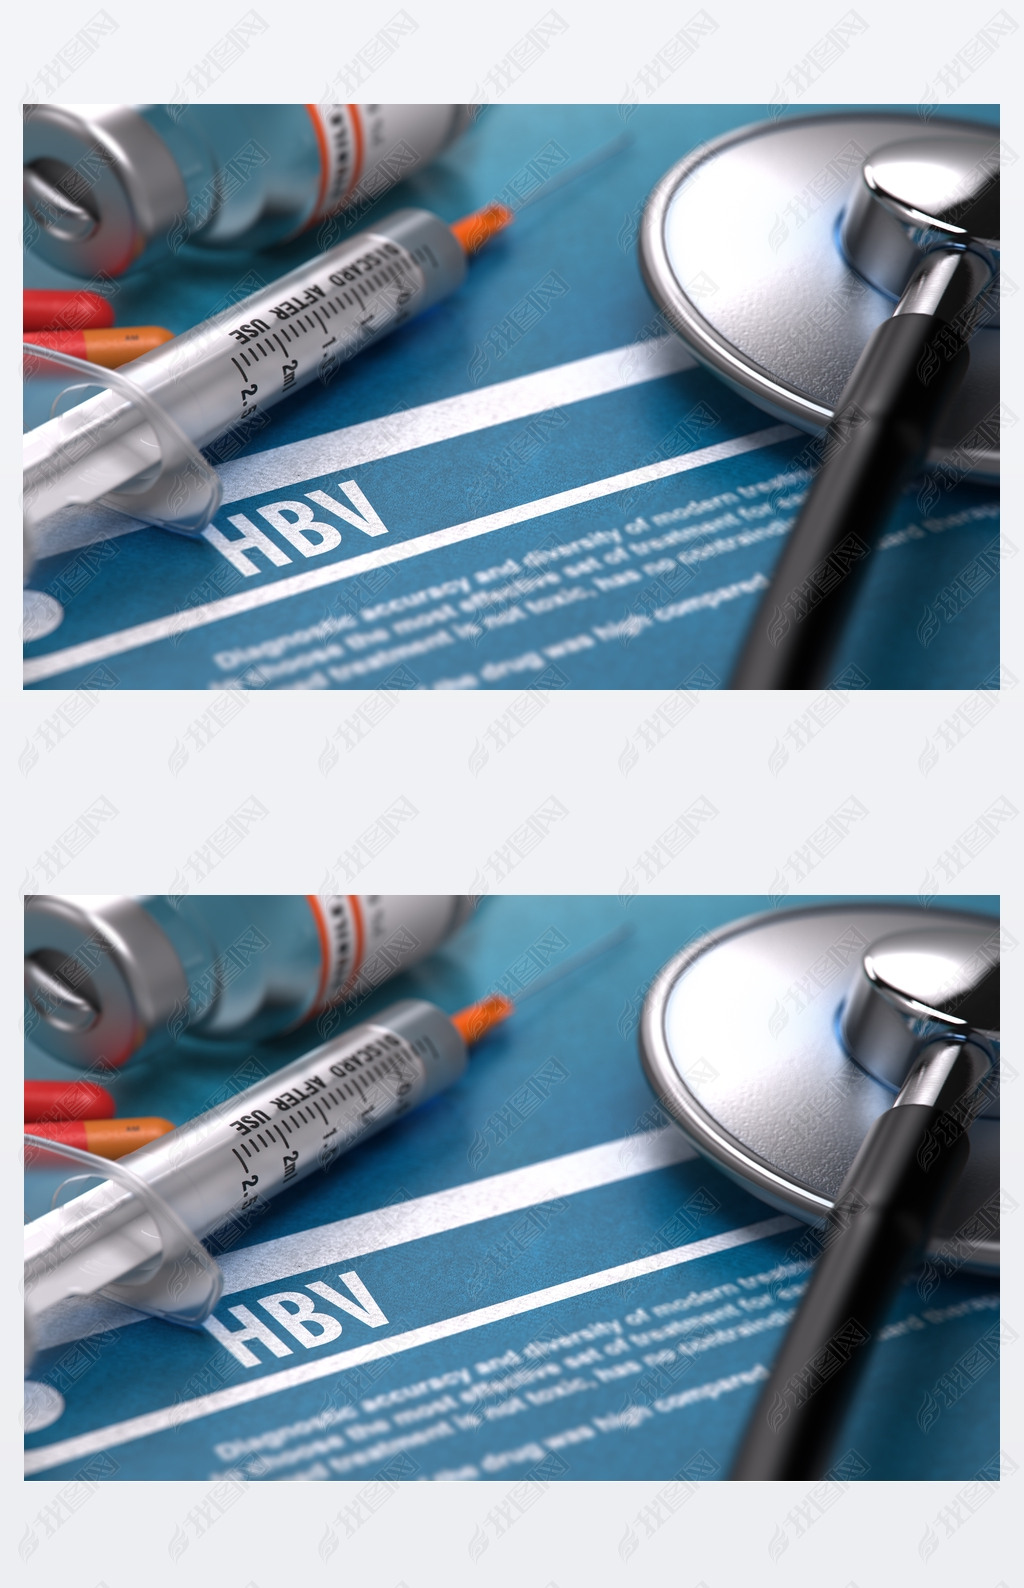 HBV. Medical Concept on Blue Background.